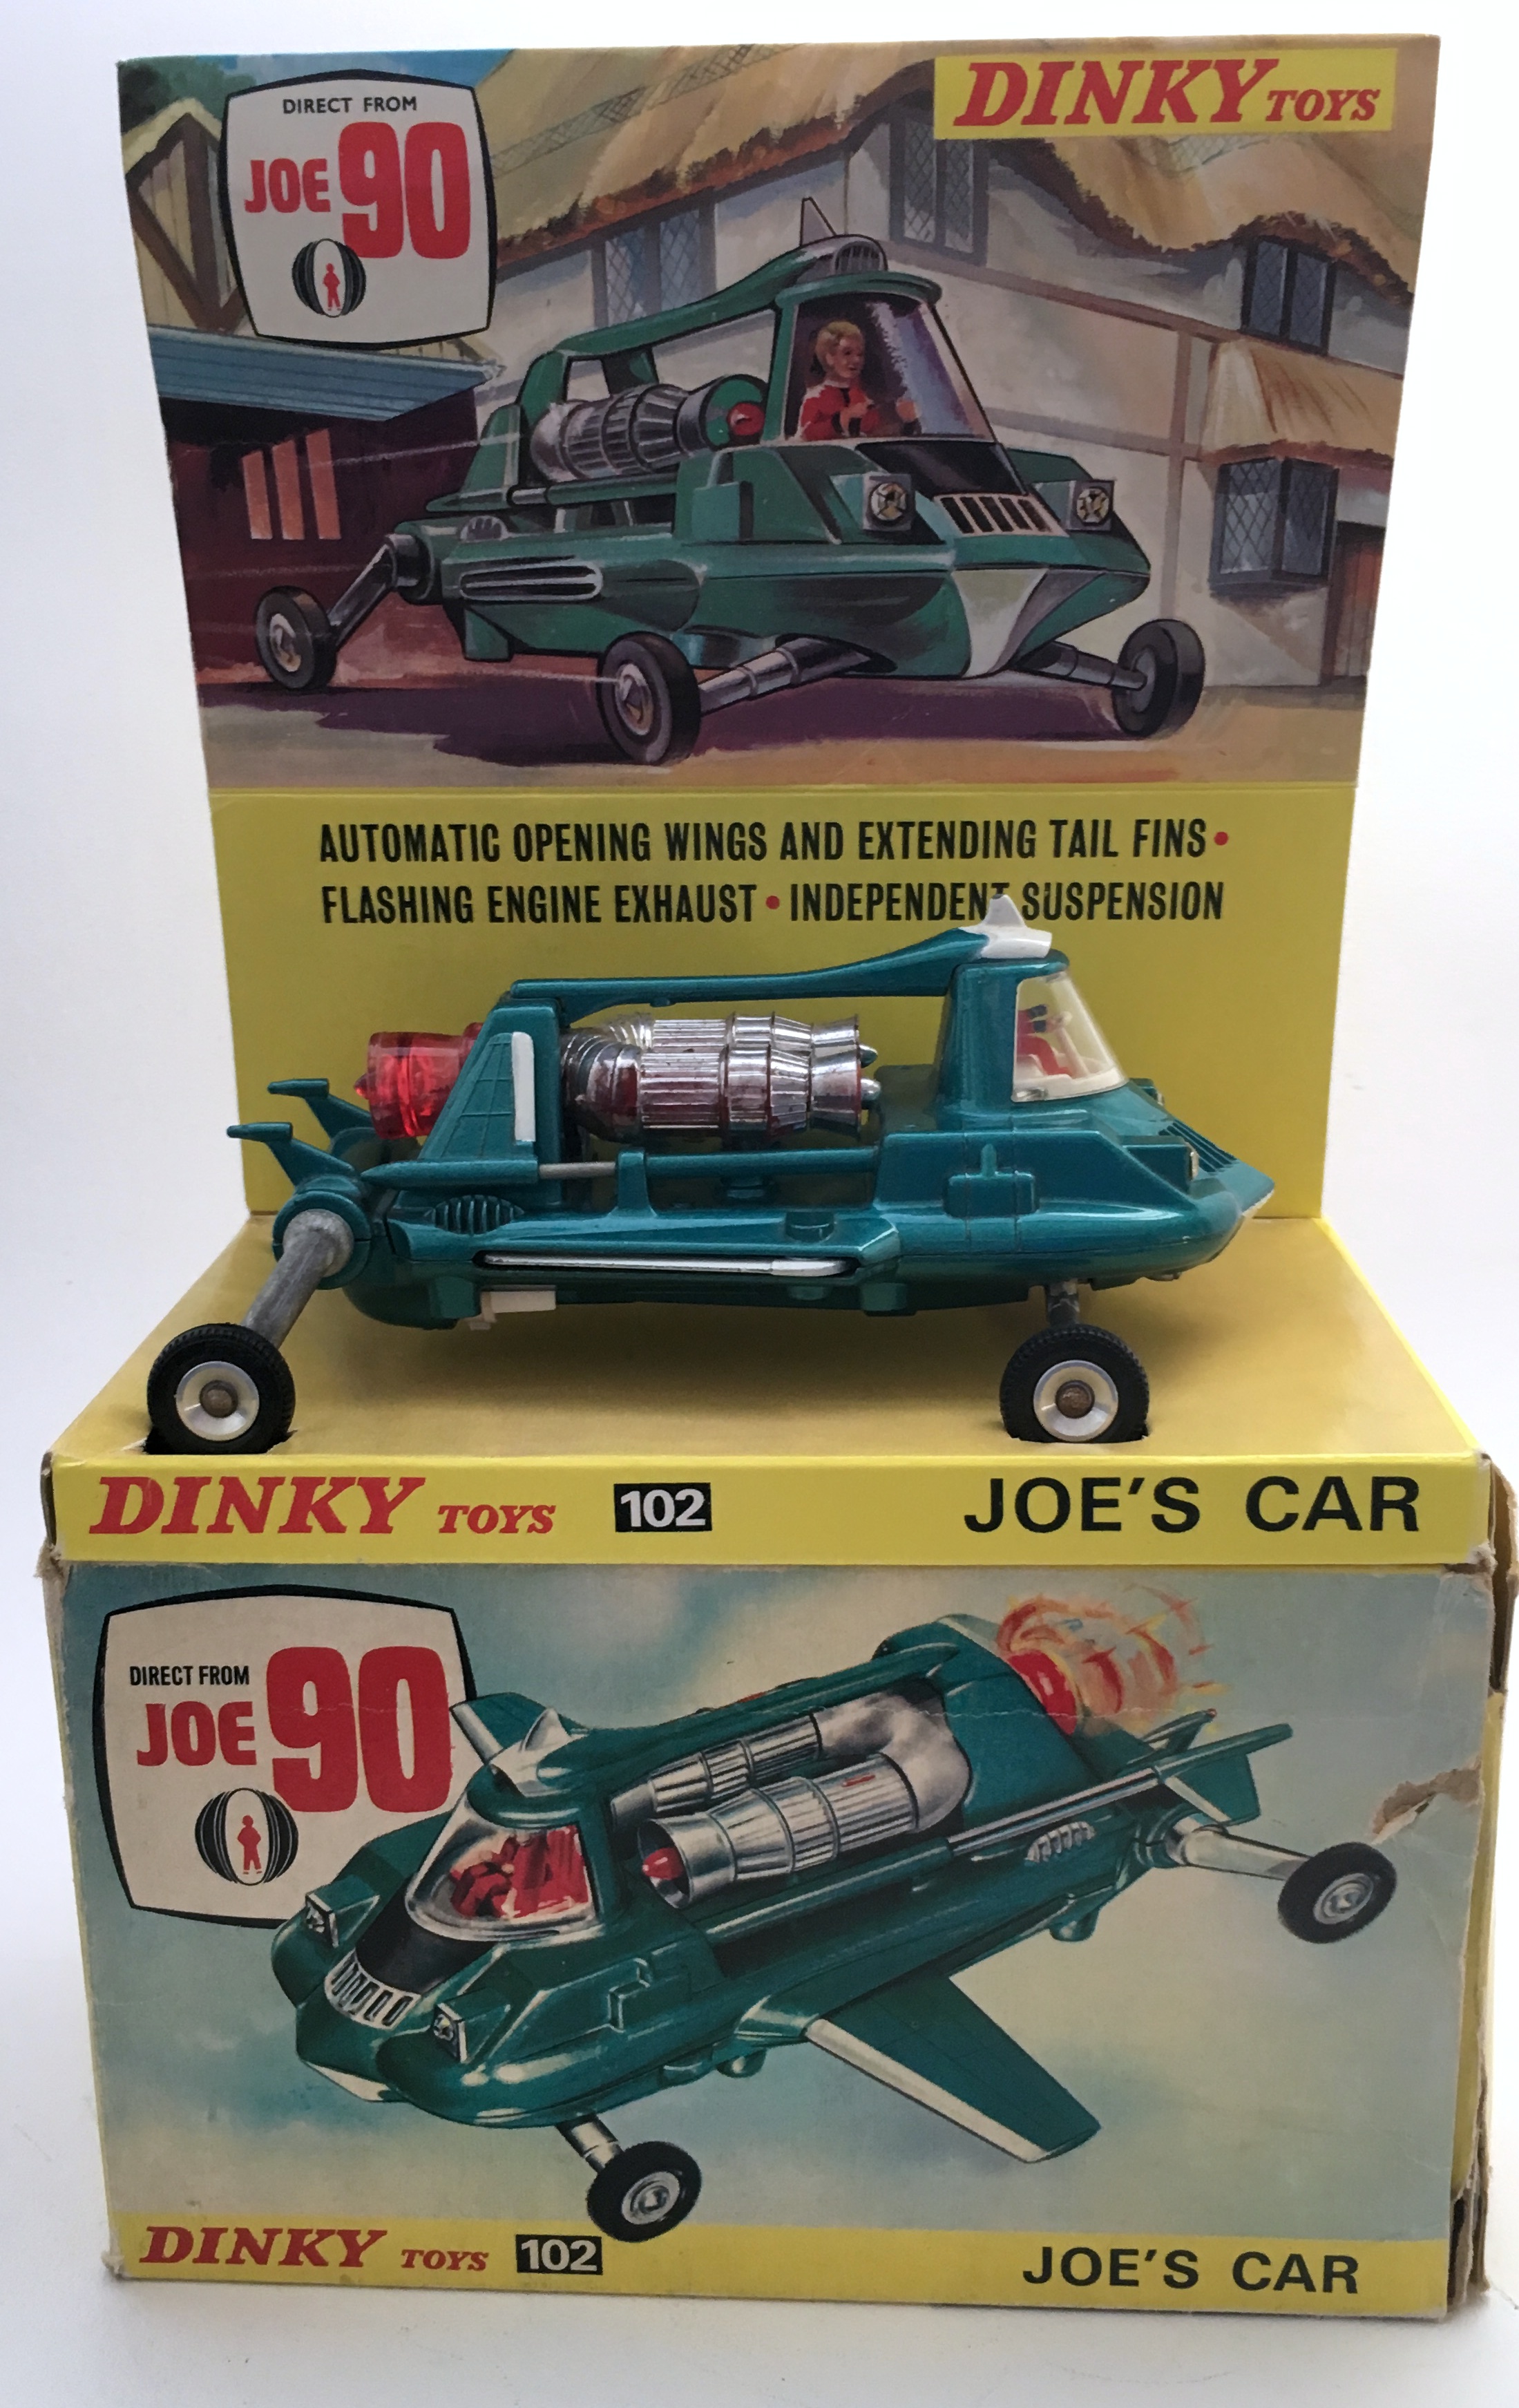 car toys specials